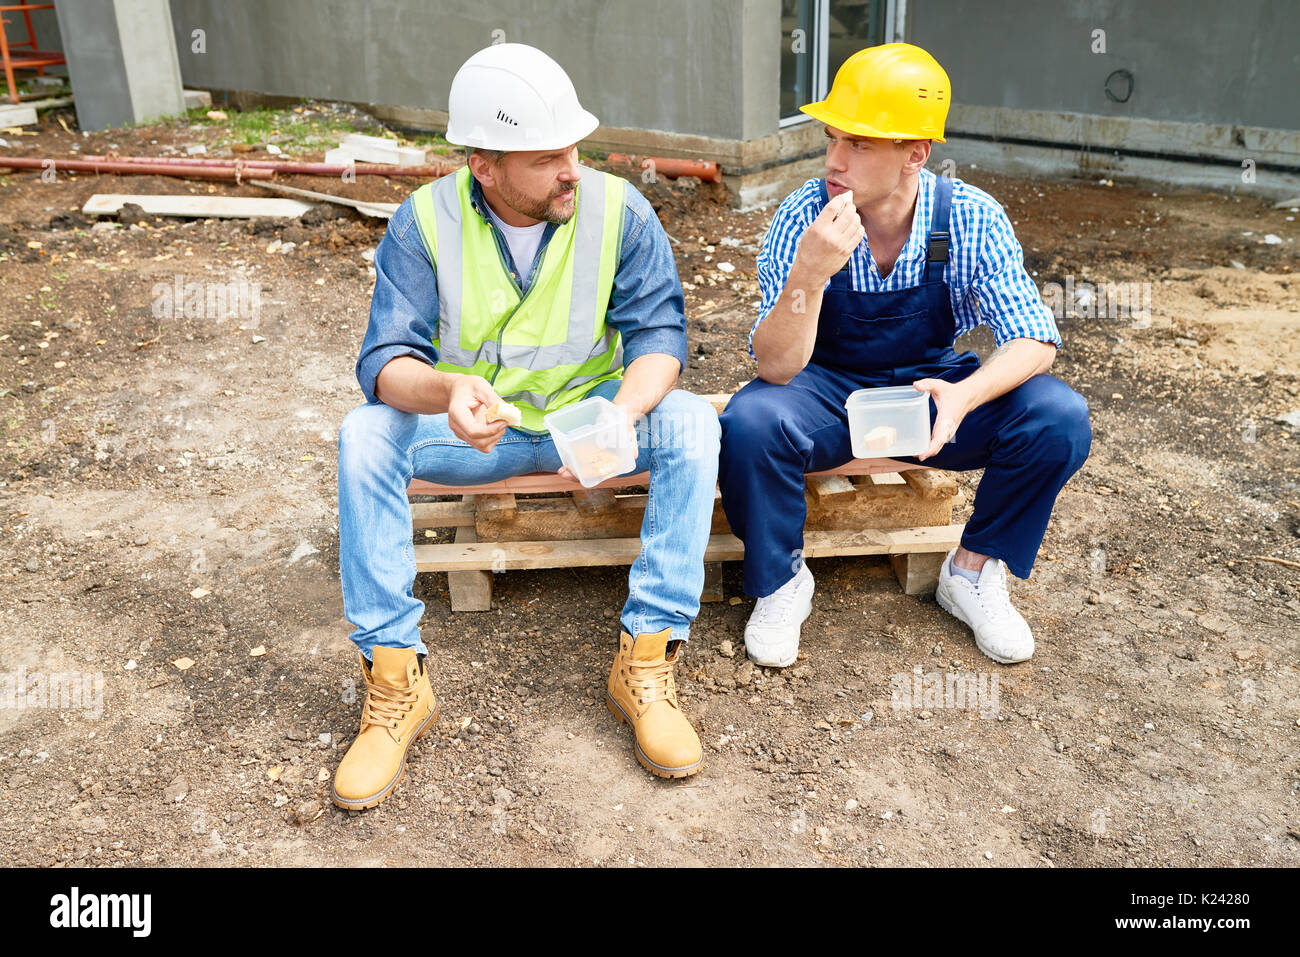 construction-workers-on-lunch-break-K24280.jpg